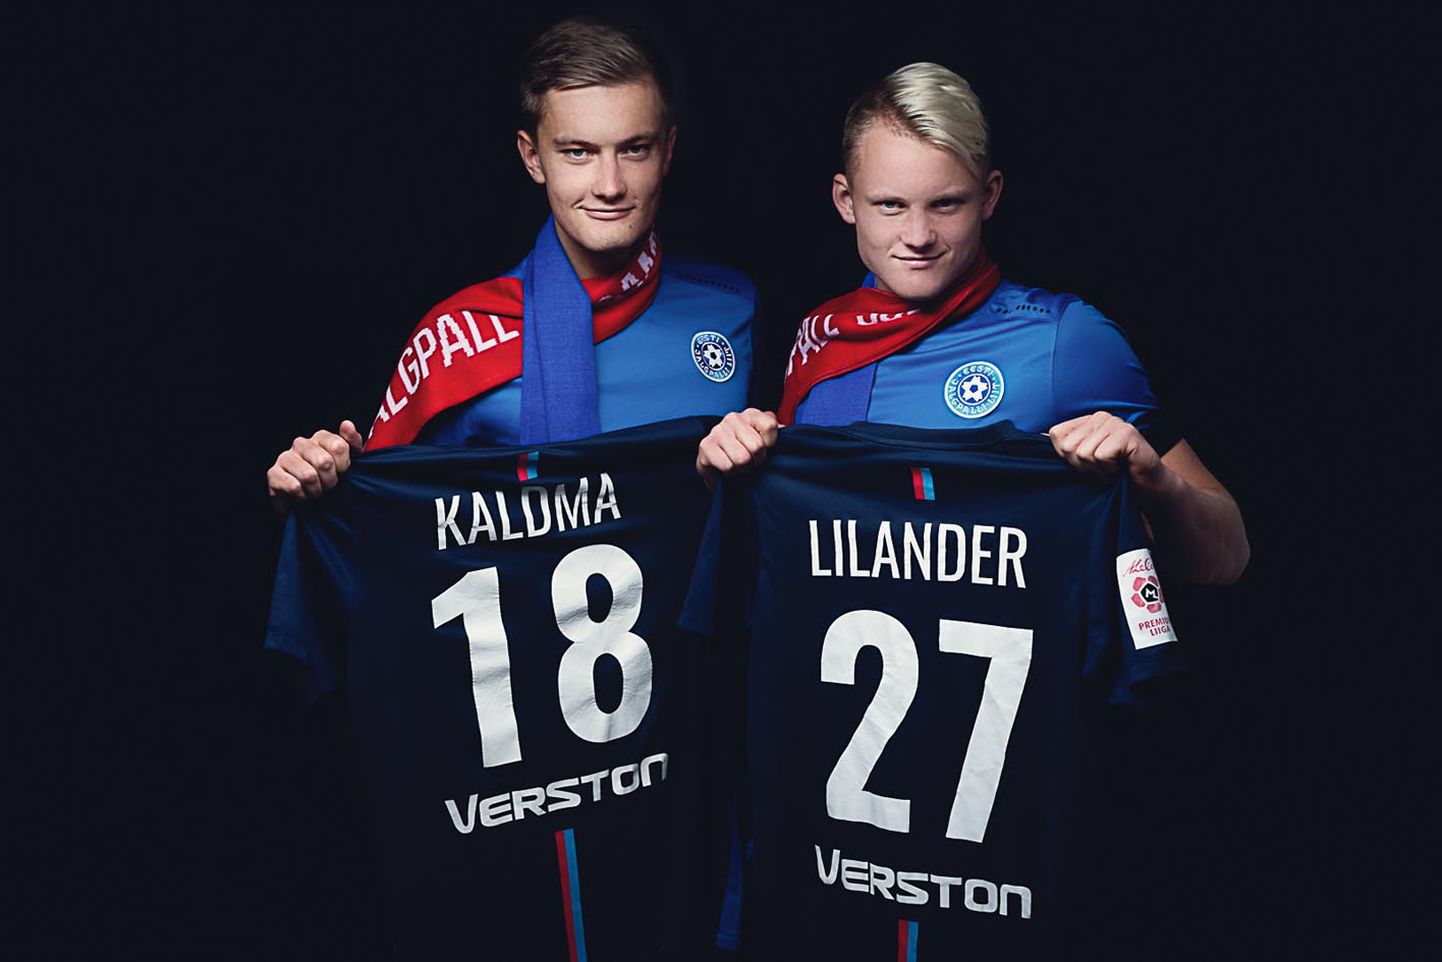 Eesti A-koondises debüüdi teinud Paide linnameeskonna kaitsjad Sören Kaldma ja Michael Lilander pikendasid klubiga lepingut 2019. aasta lõpuni.